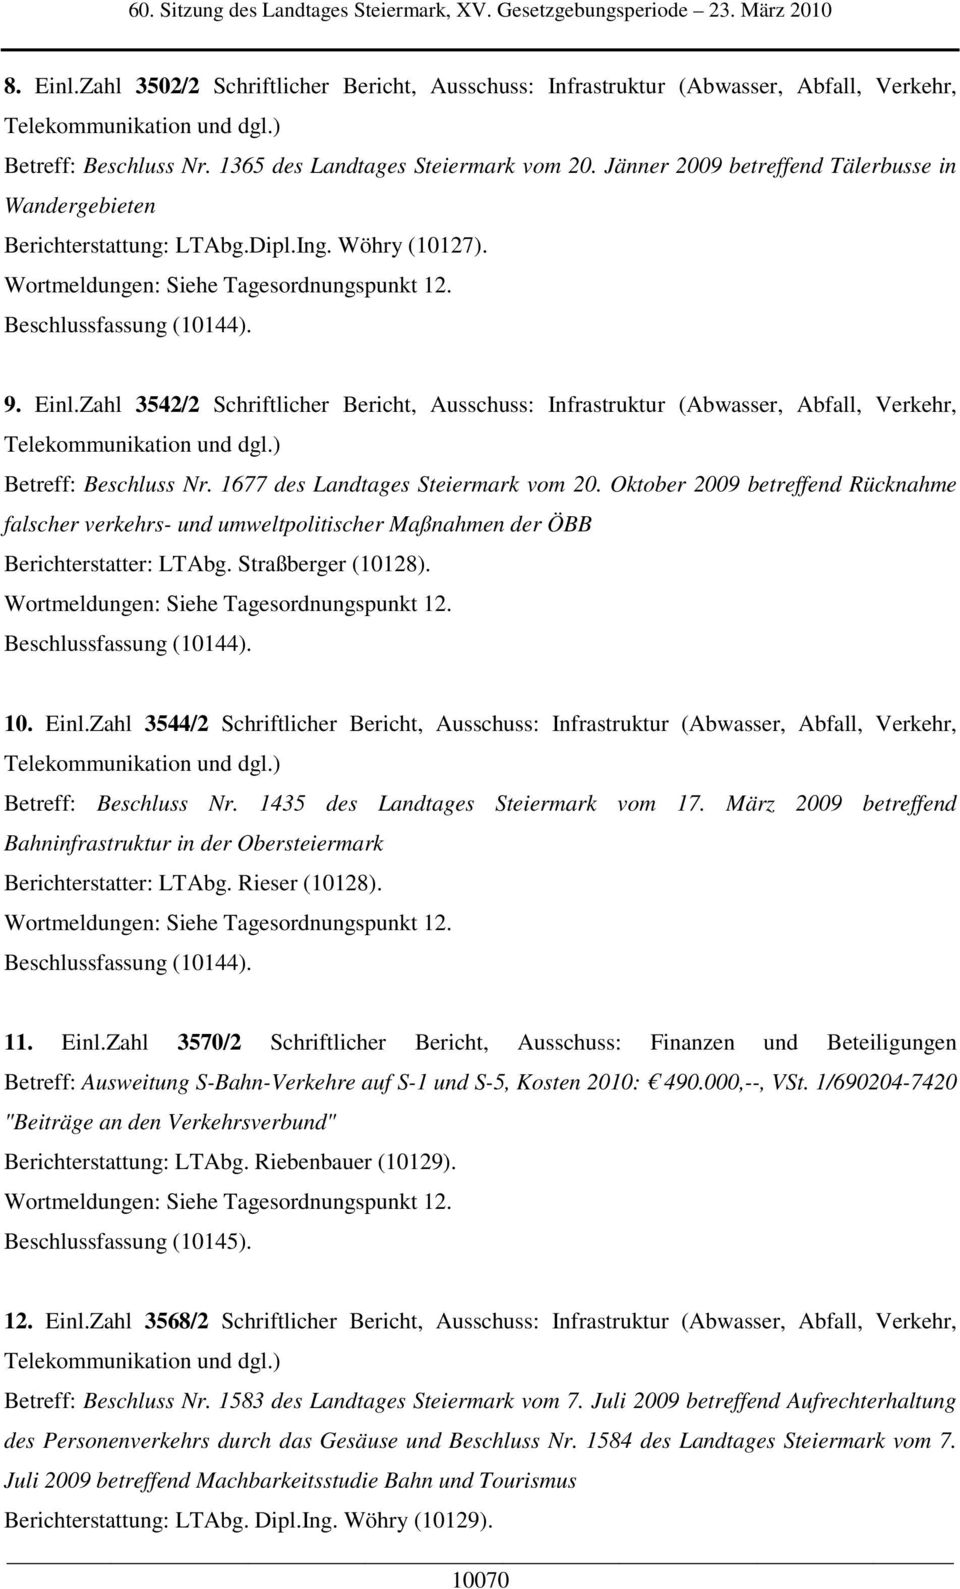 Zahl 3542/2 Schriftlicher Bericht, Ausschuss: Infrastruktur (Abwasser, Abfall, Verkehr, Telekommunikation und dgl.) Betreff: Beschluss Nr. 1677 des Landtages Steiermark vom 20.